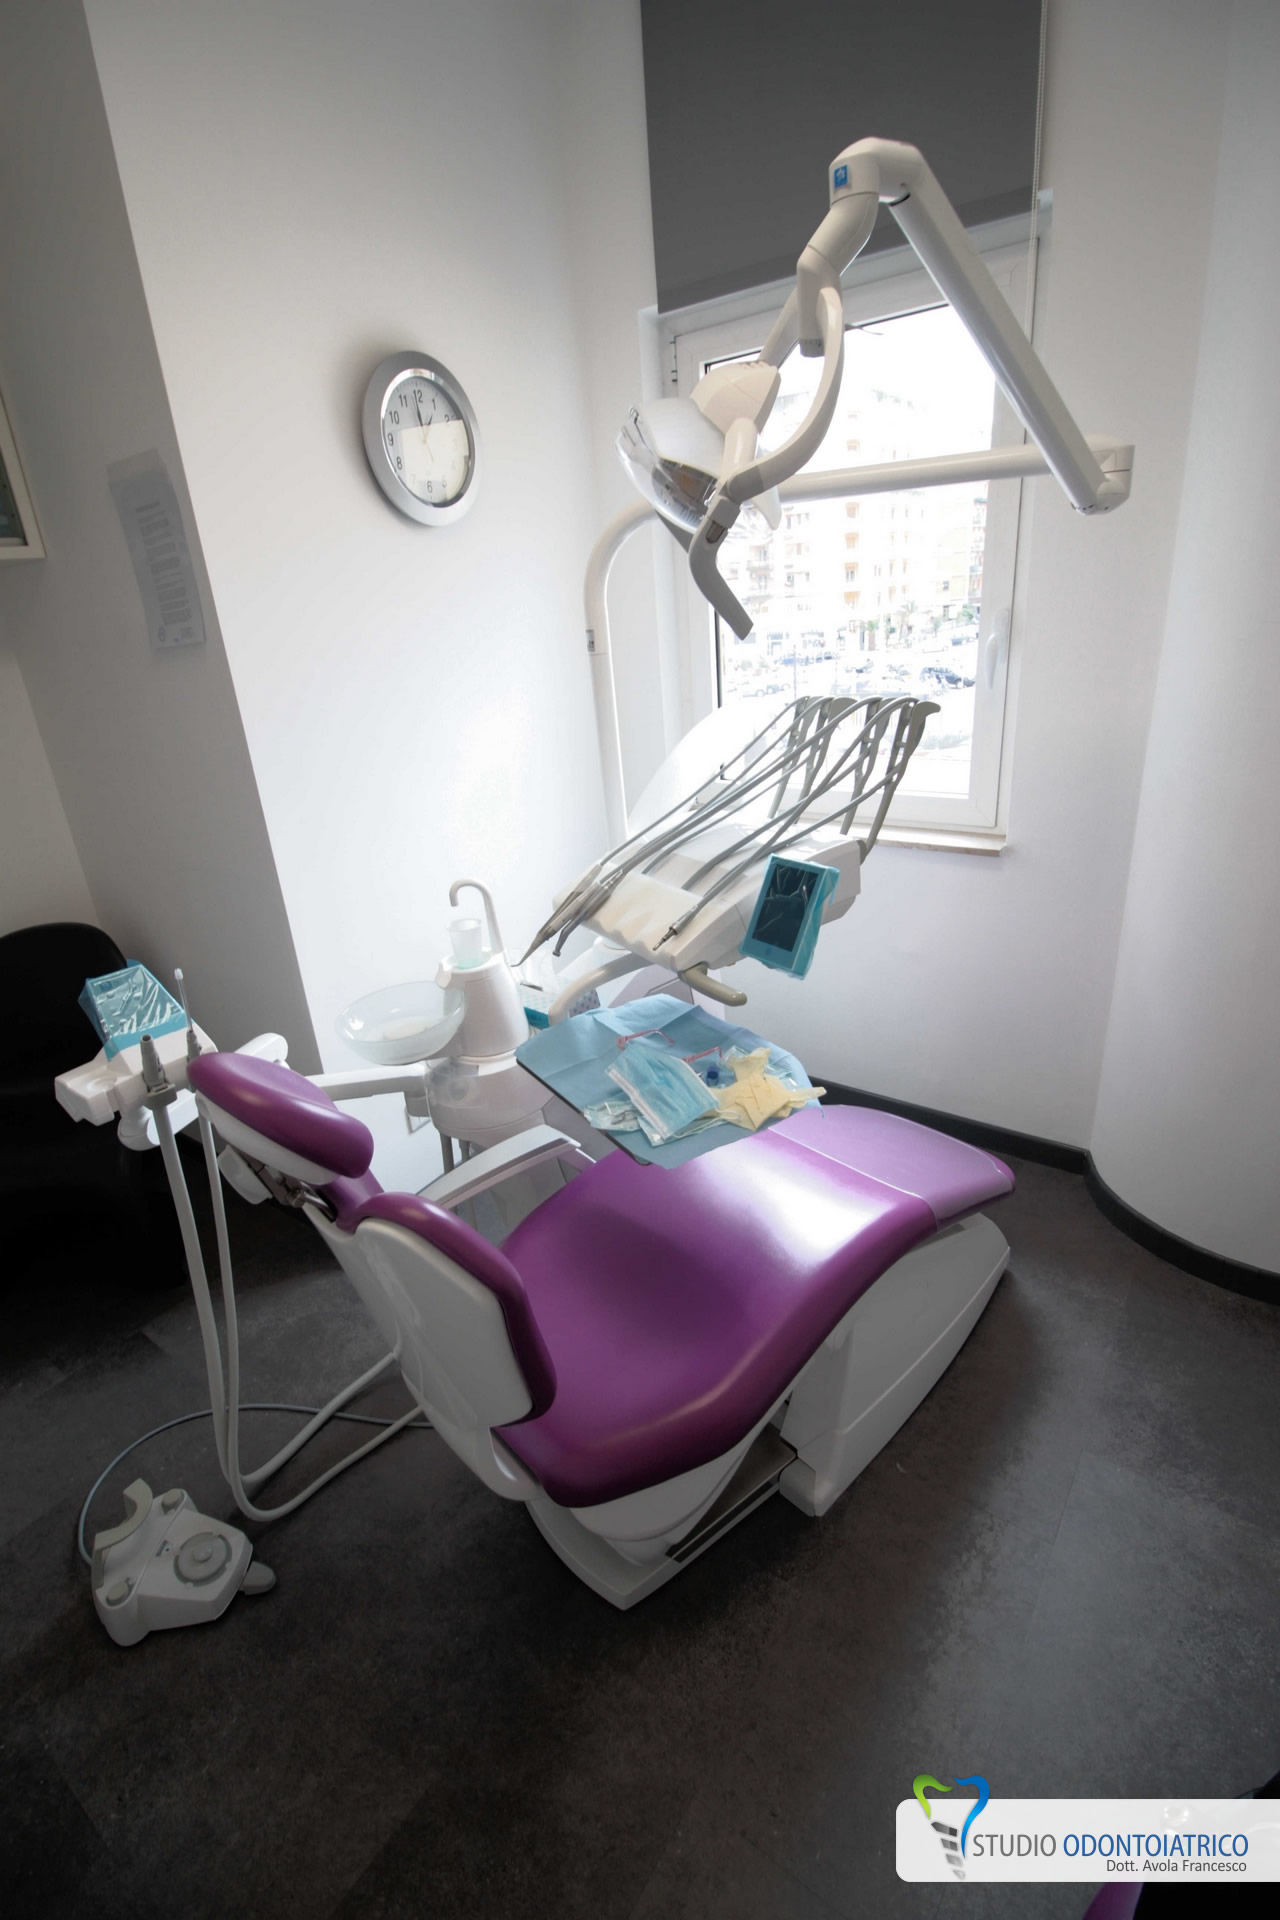 Studio odontoiatrico a Palermo Avola